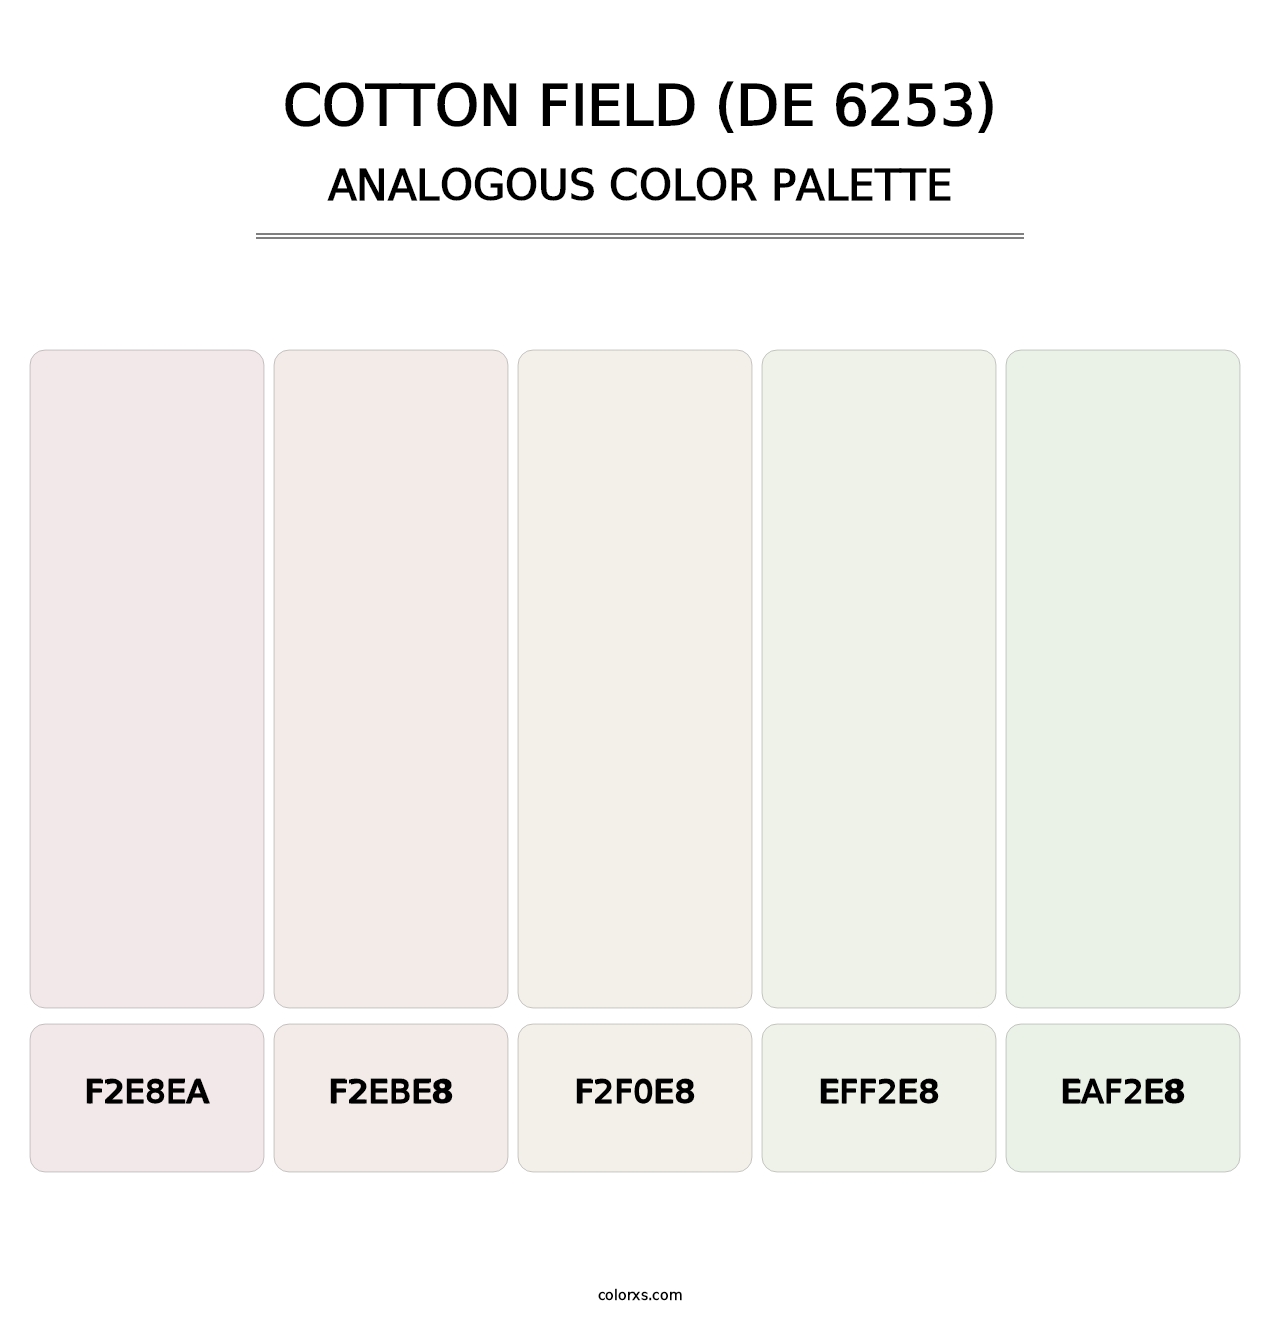 Cotton Field (DE 6253) - Analogous Color Palette